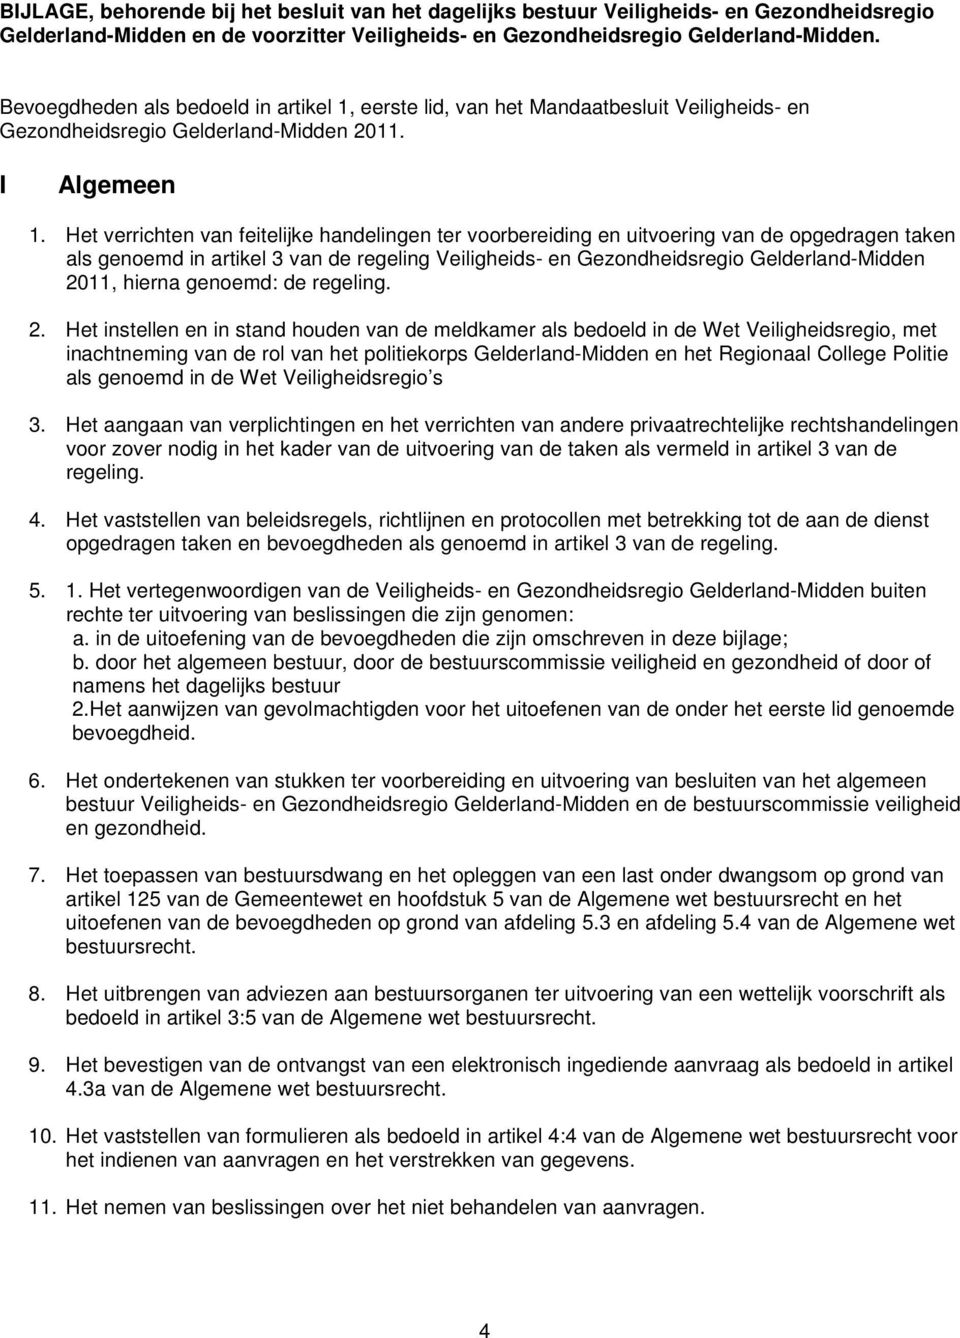 Het verrichten van feitelijke handelingen ter voorbereiding en uitvoering van de opgedragen taken als genoemd in artikel 3 van de regeling Veiligheids- en Gezondheidsregio Gelderland-Midden 2011,